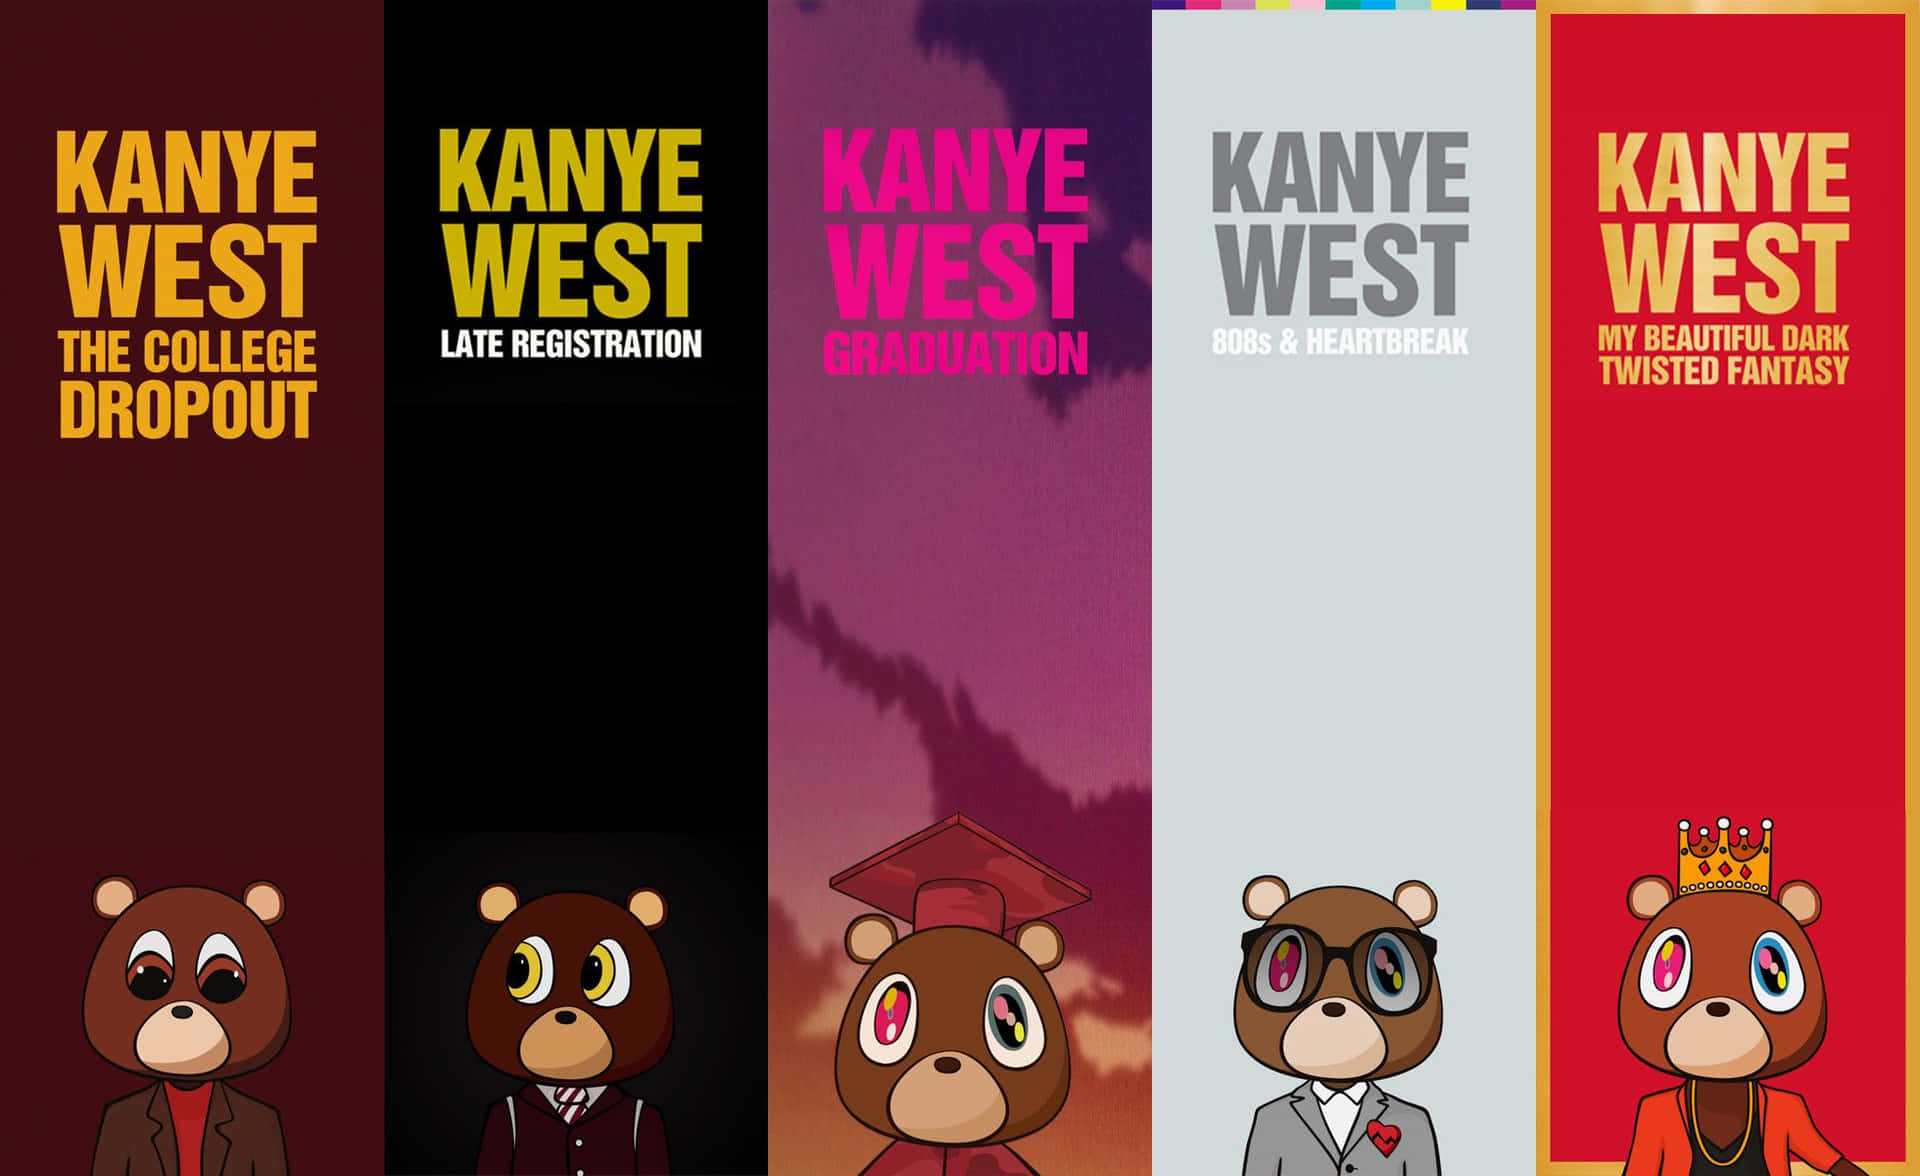 Kanyewest Kanye West Kanye West Kanye West Kanye West Kanye West Kan Wallpaper